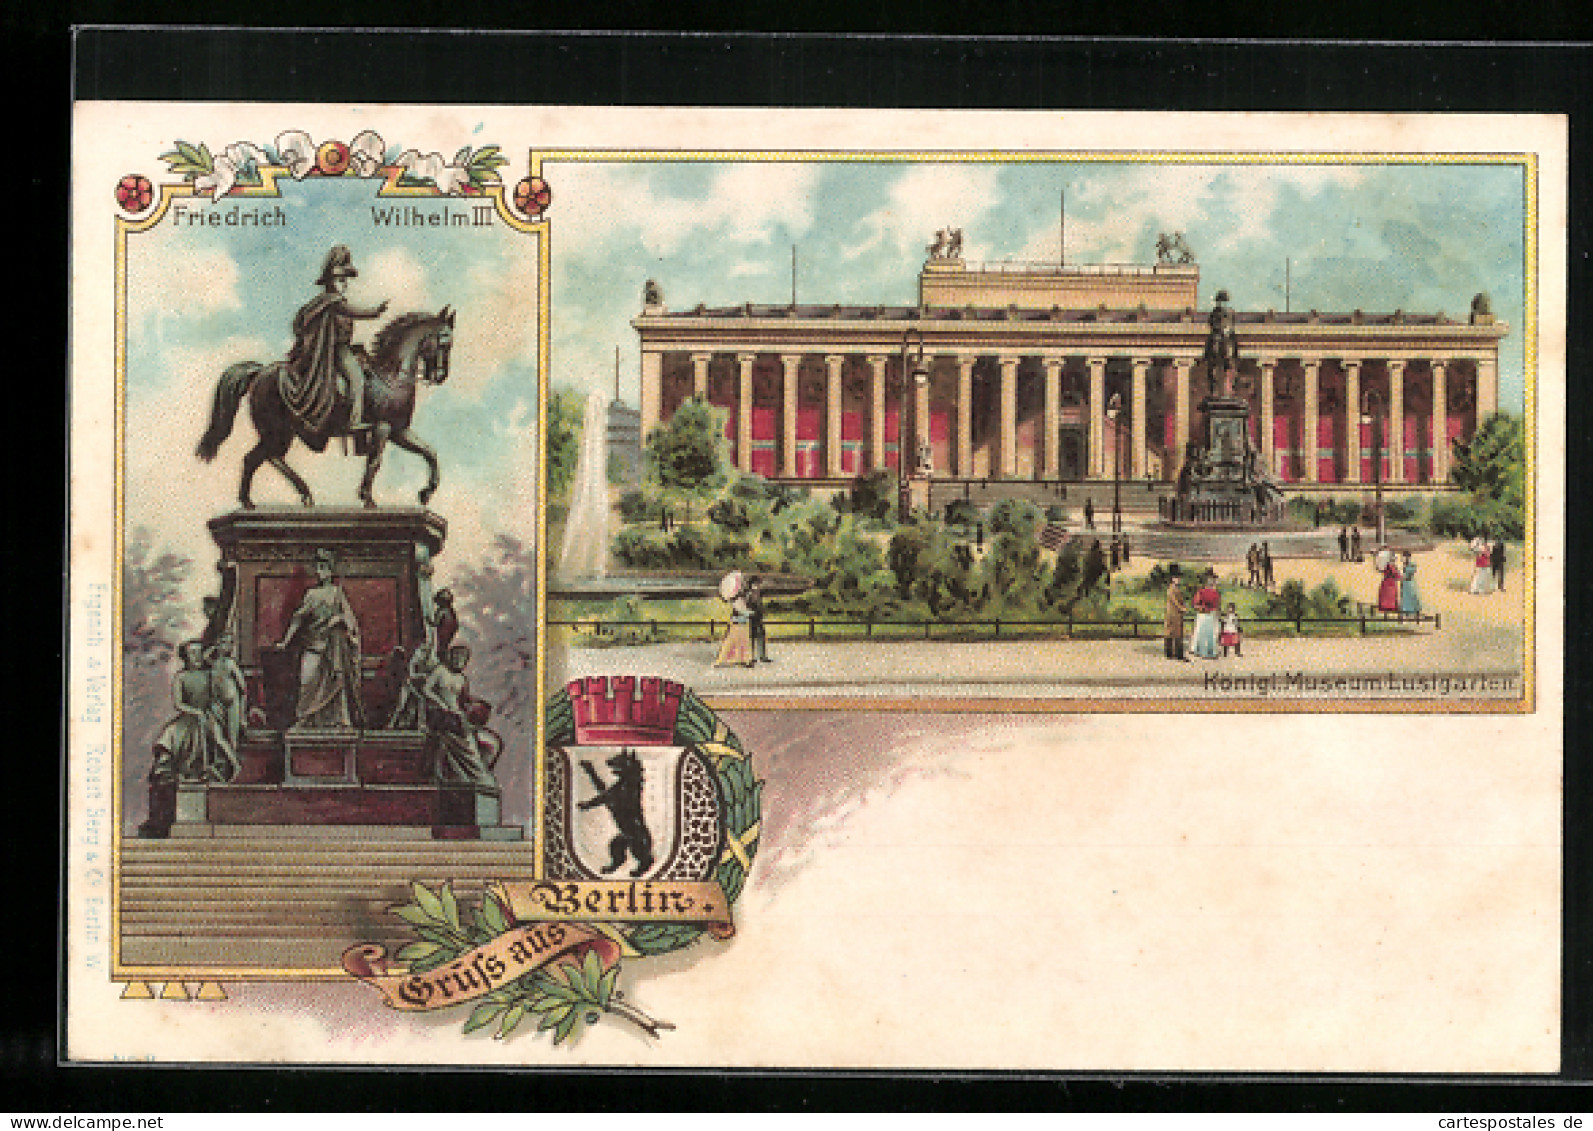 Lithographie Berlin, Kgl. Museum Mit Lustgarten, Denkmal Friedrich Wilhelm III., Wappen  - Mitte